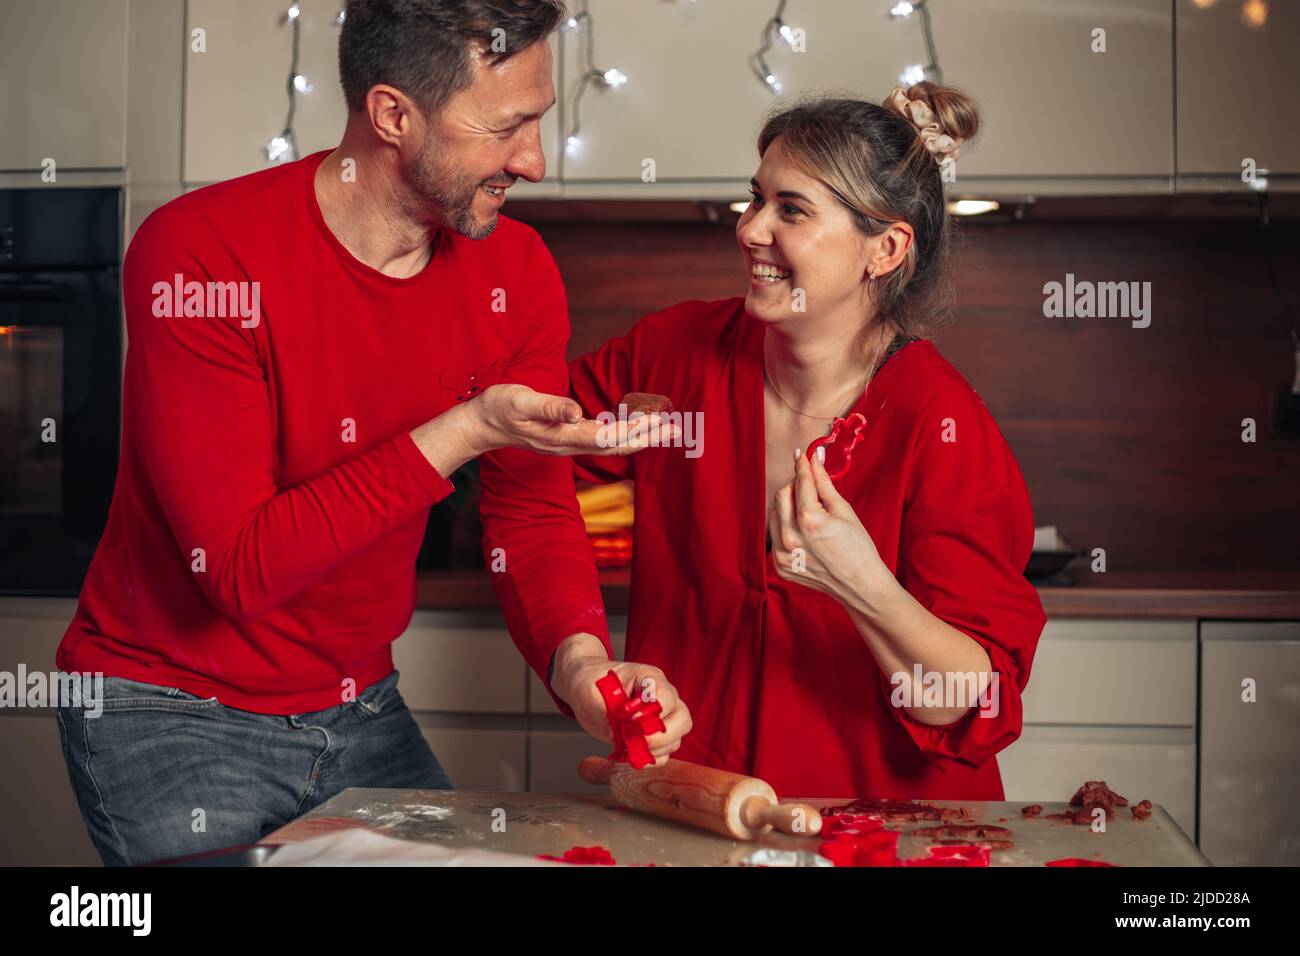 Giovane donna carina e uomo vestito di vestiti rossi ridono allegro mentre si cuocono i biscotti. Momenti di Natale, felice giovane coppia. Casa cucina accogliente. Foto Stock